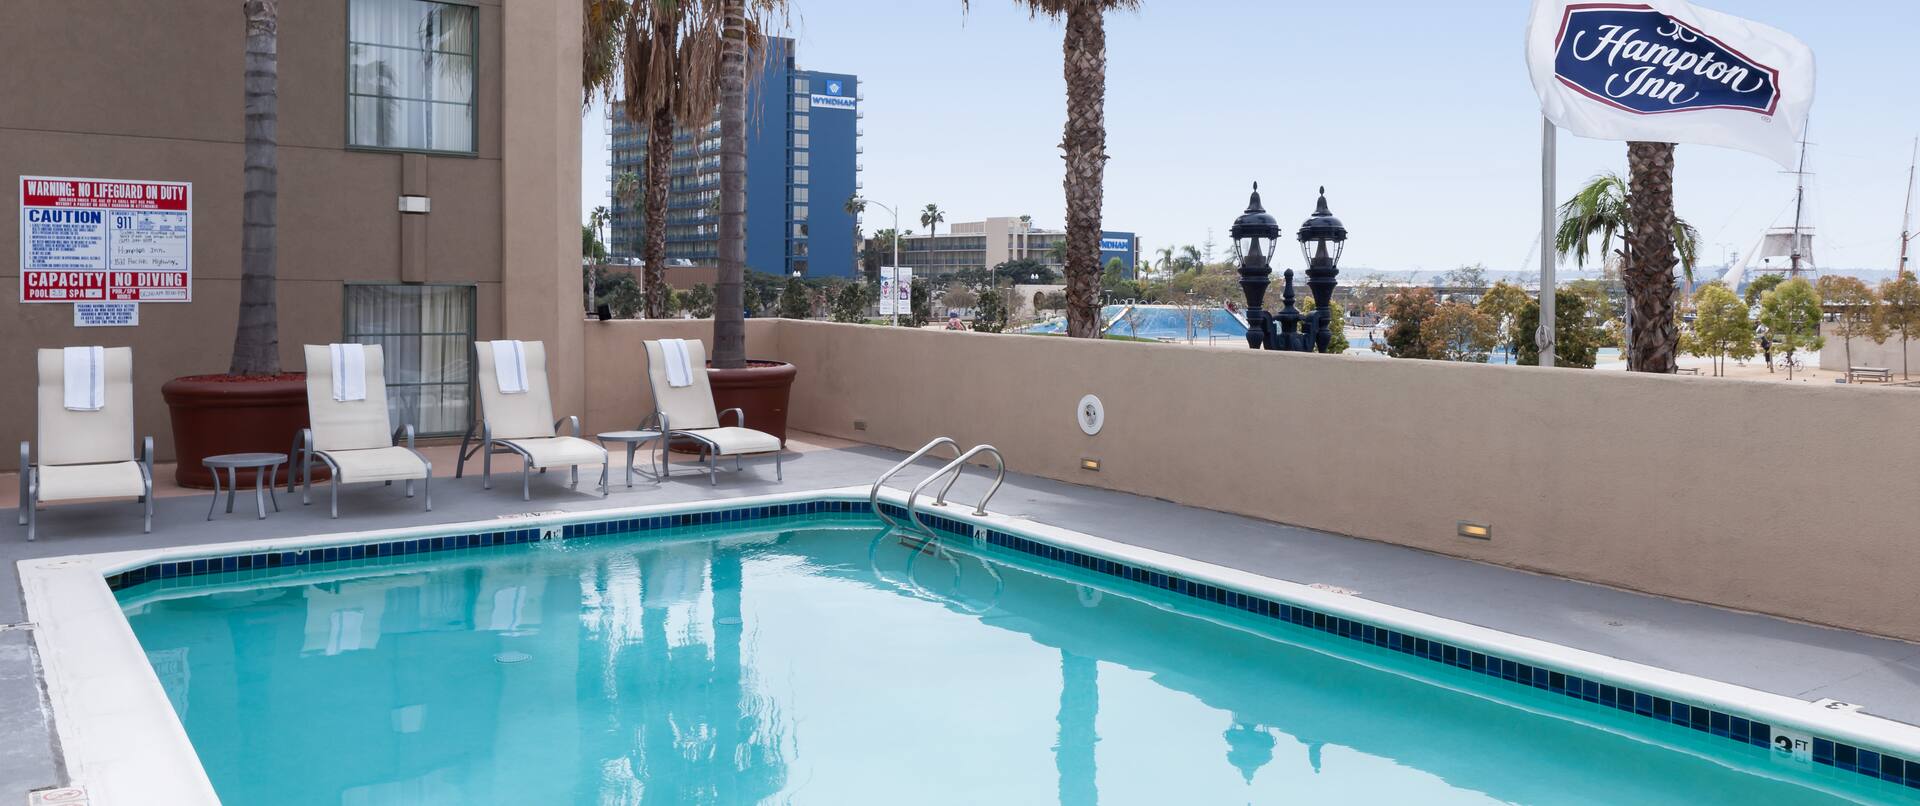 Hotel pool area